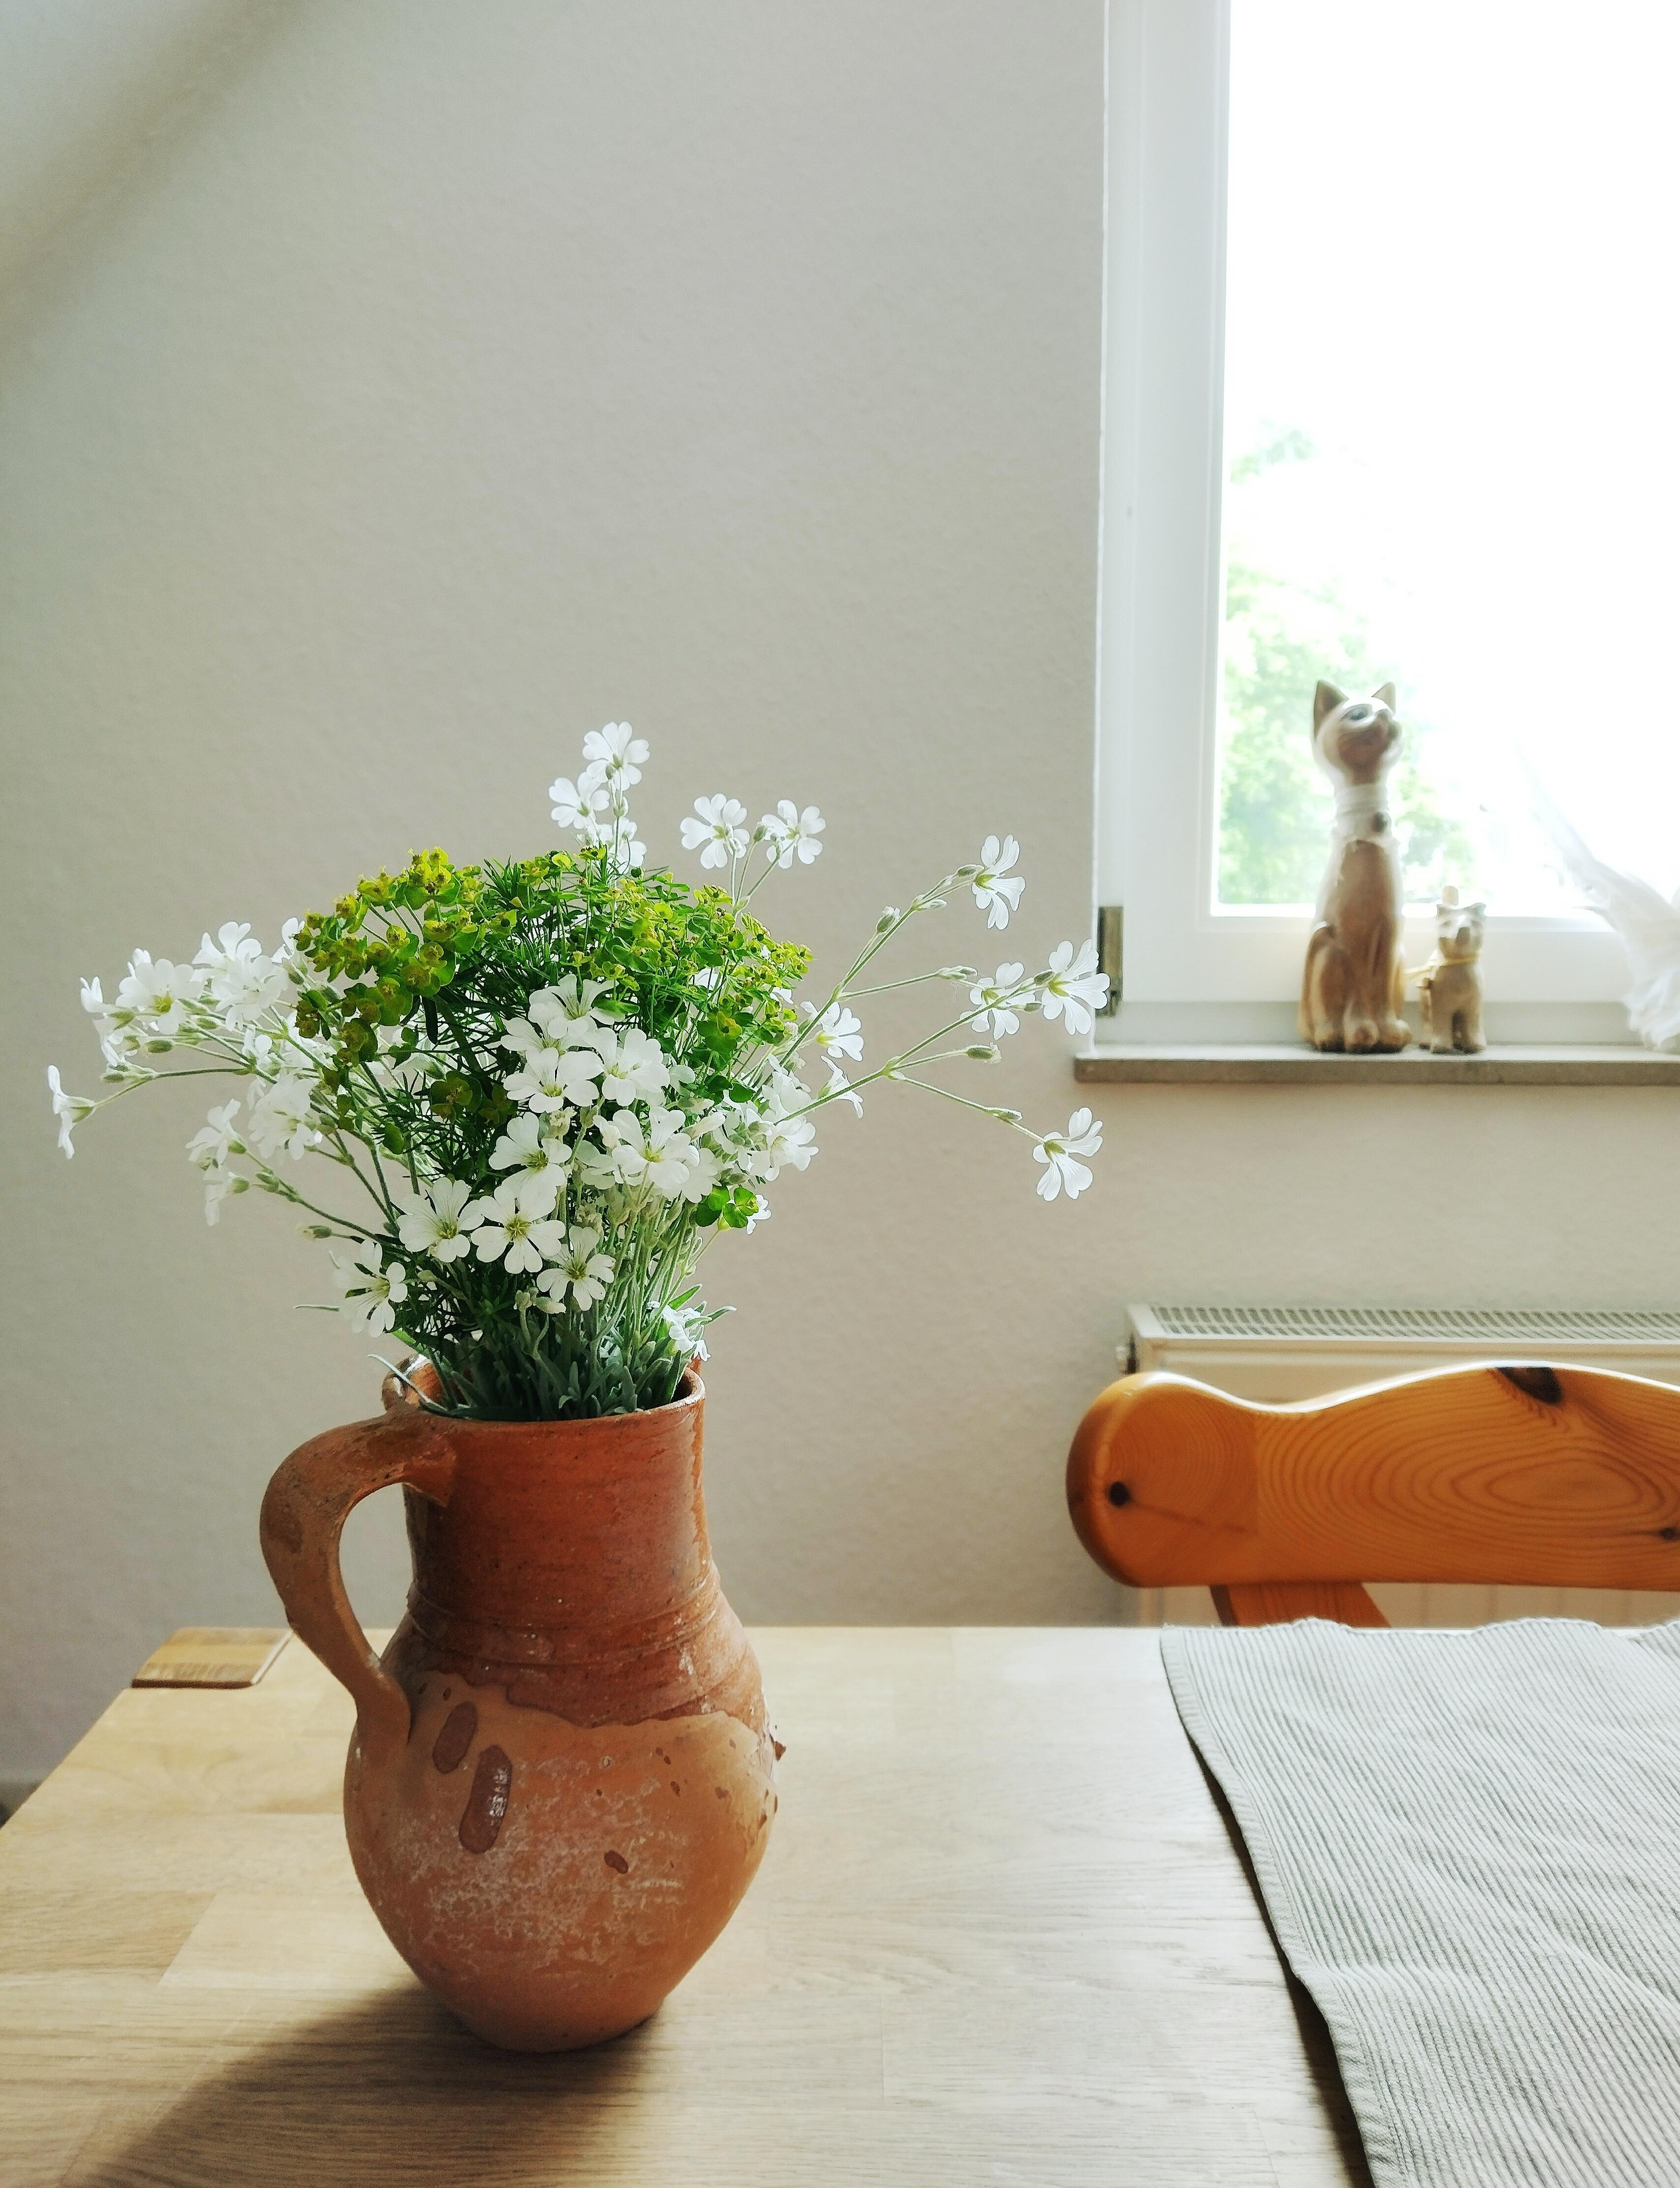 #frischeblumen #vase #krug #vintage #essecke #details #naturfarben